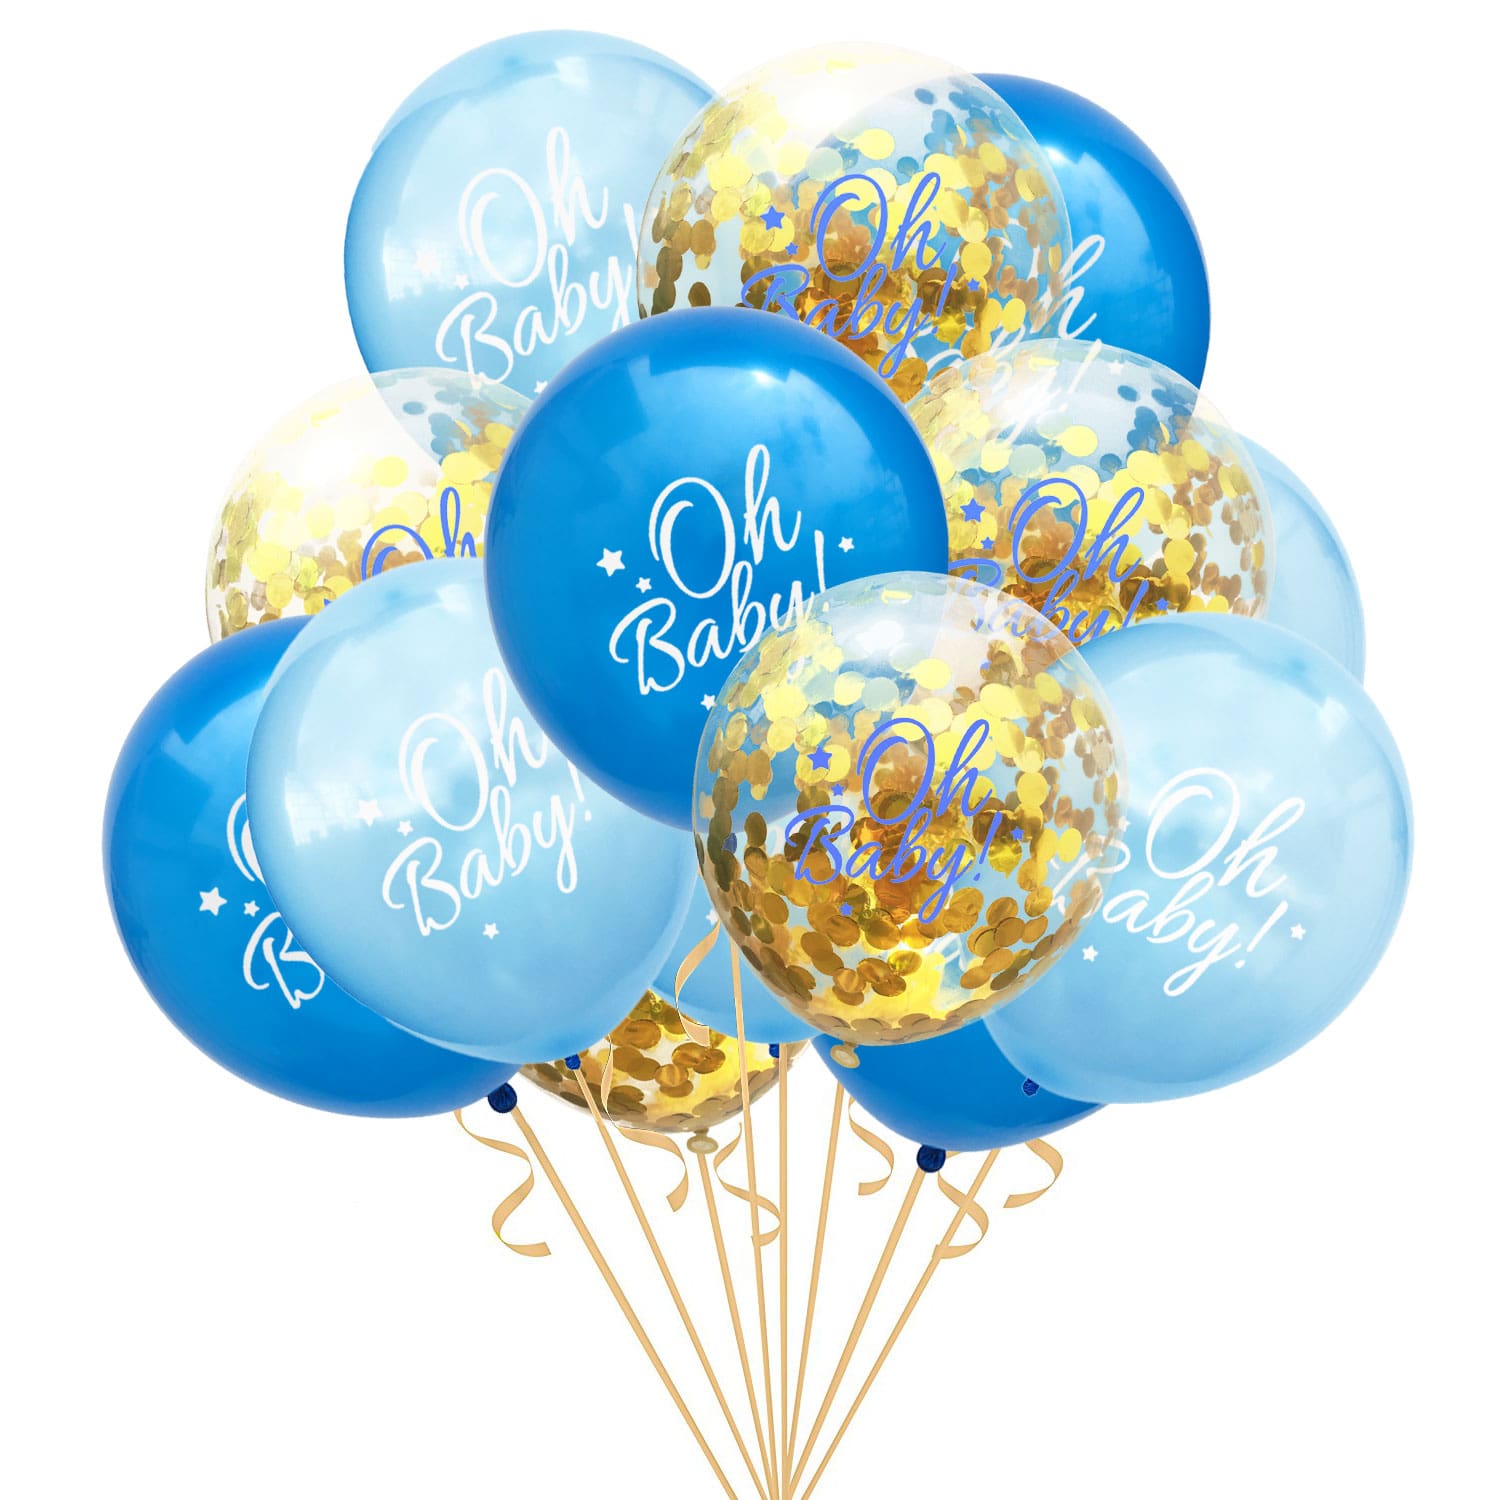 Luftballons Blau,100 Stück Ballon Blau Latex Helium für Hochzeit Junge 1 Geburtstag Babydusche Taufe Konfirmation Party Deko Blau